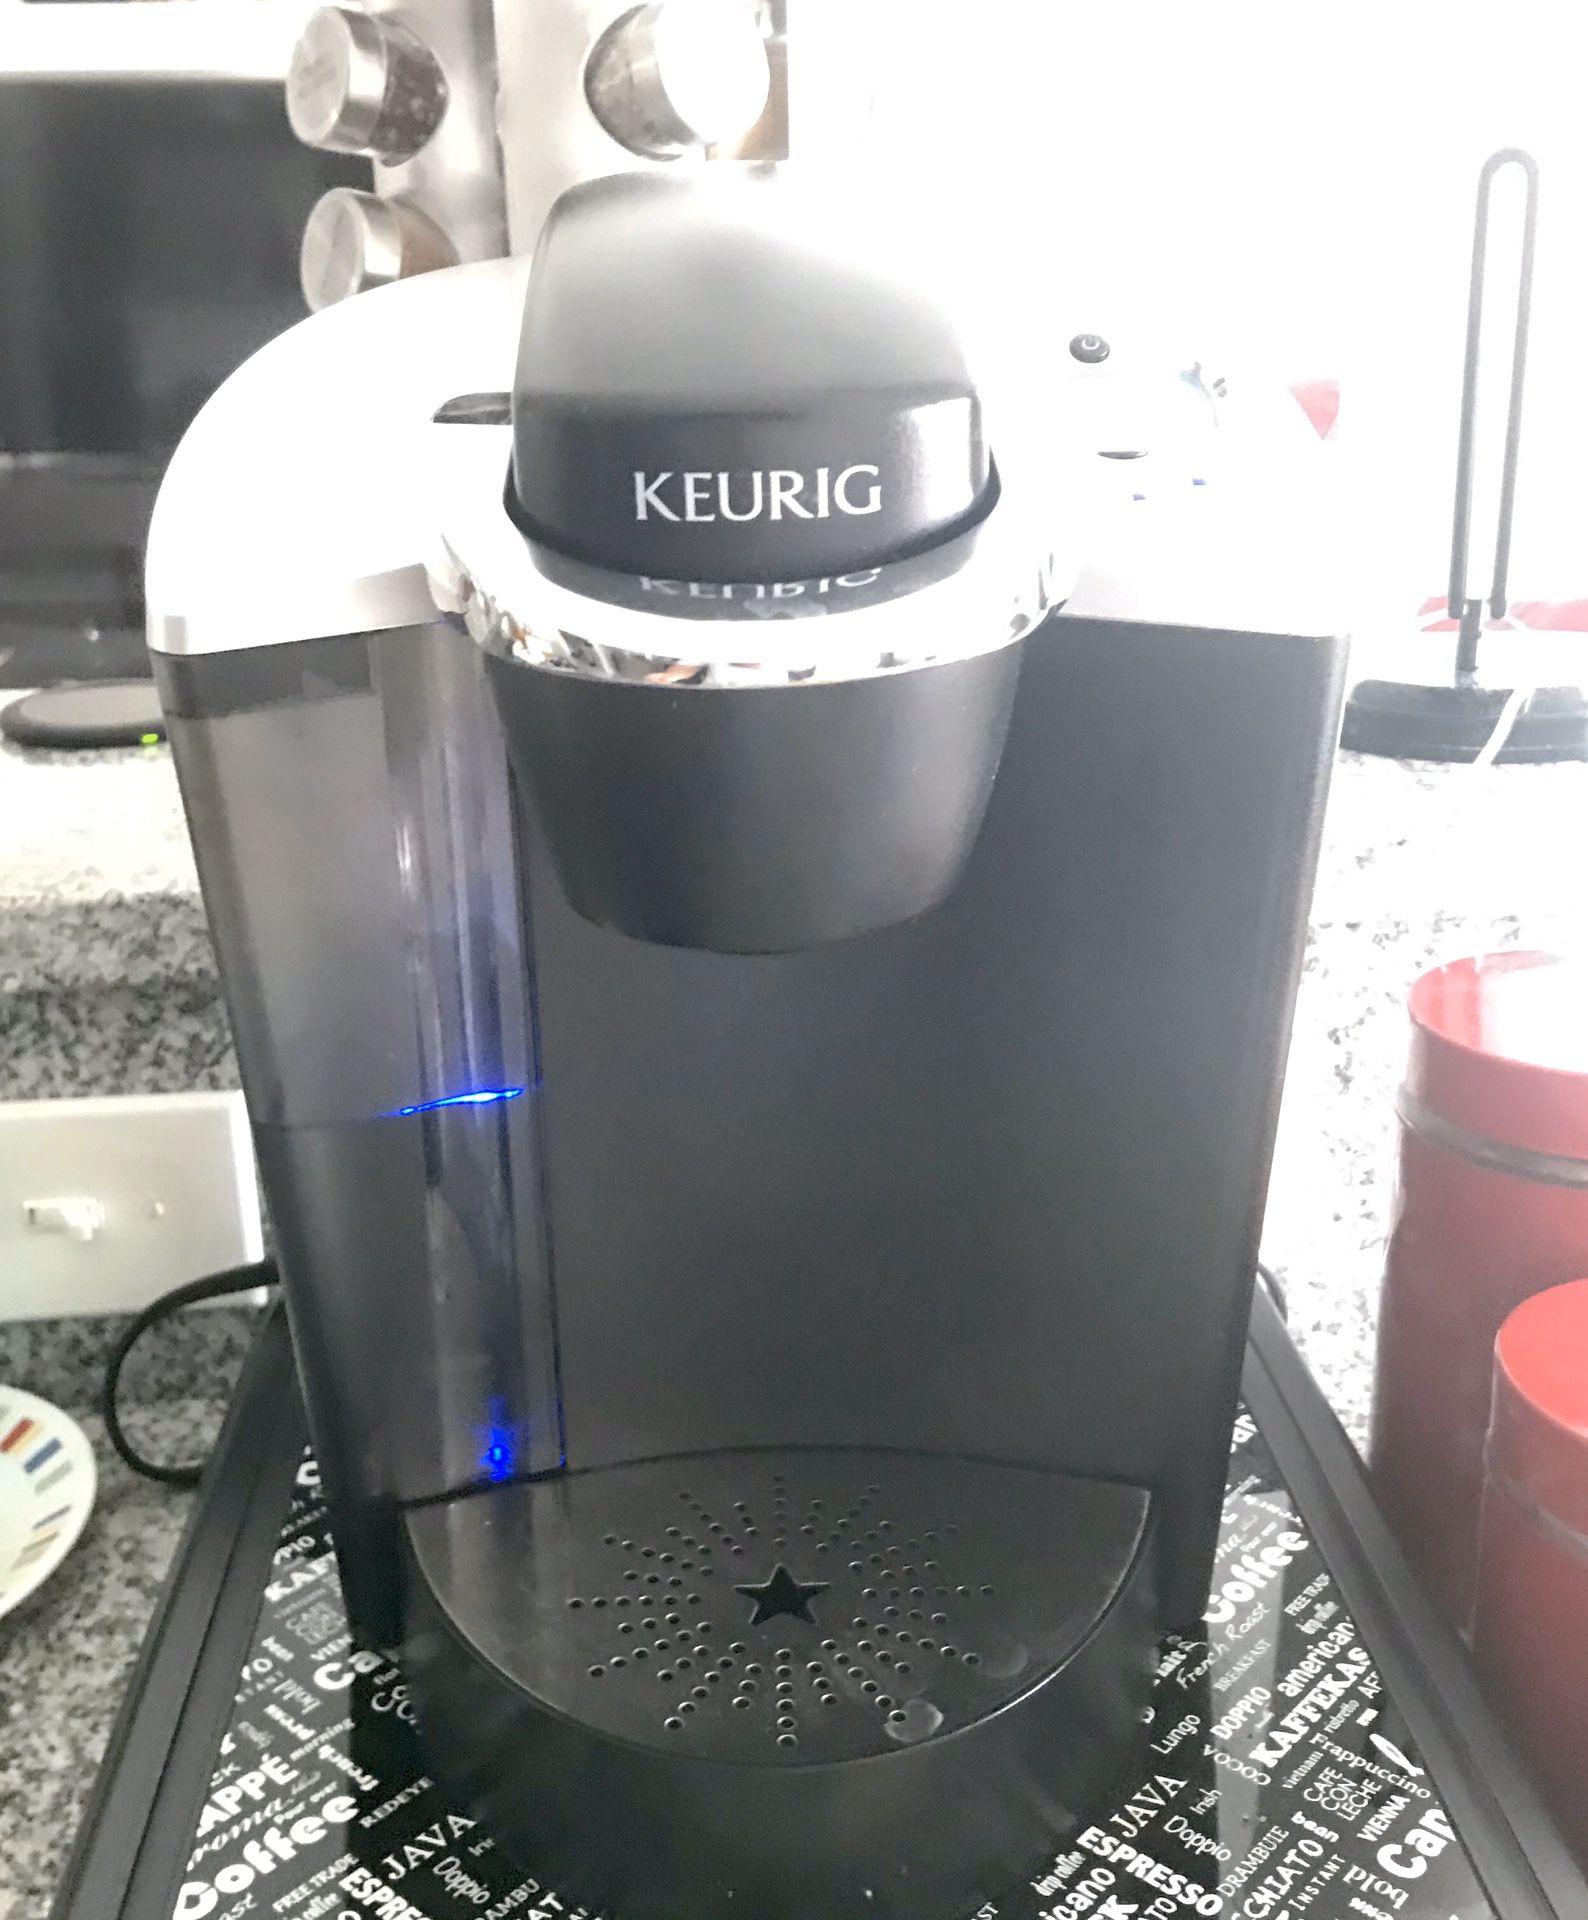 Keurig® Single Serve coffee maker